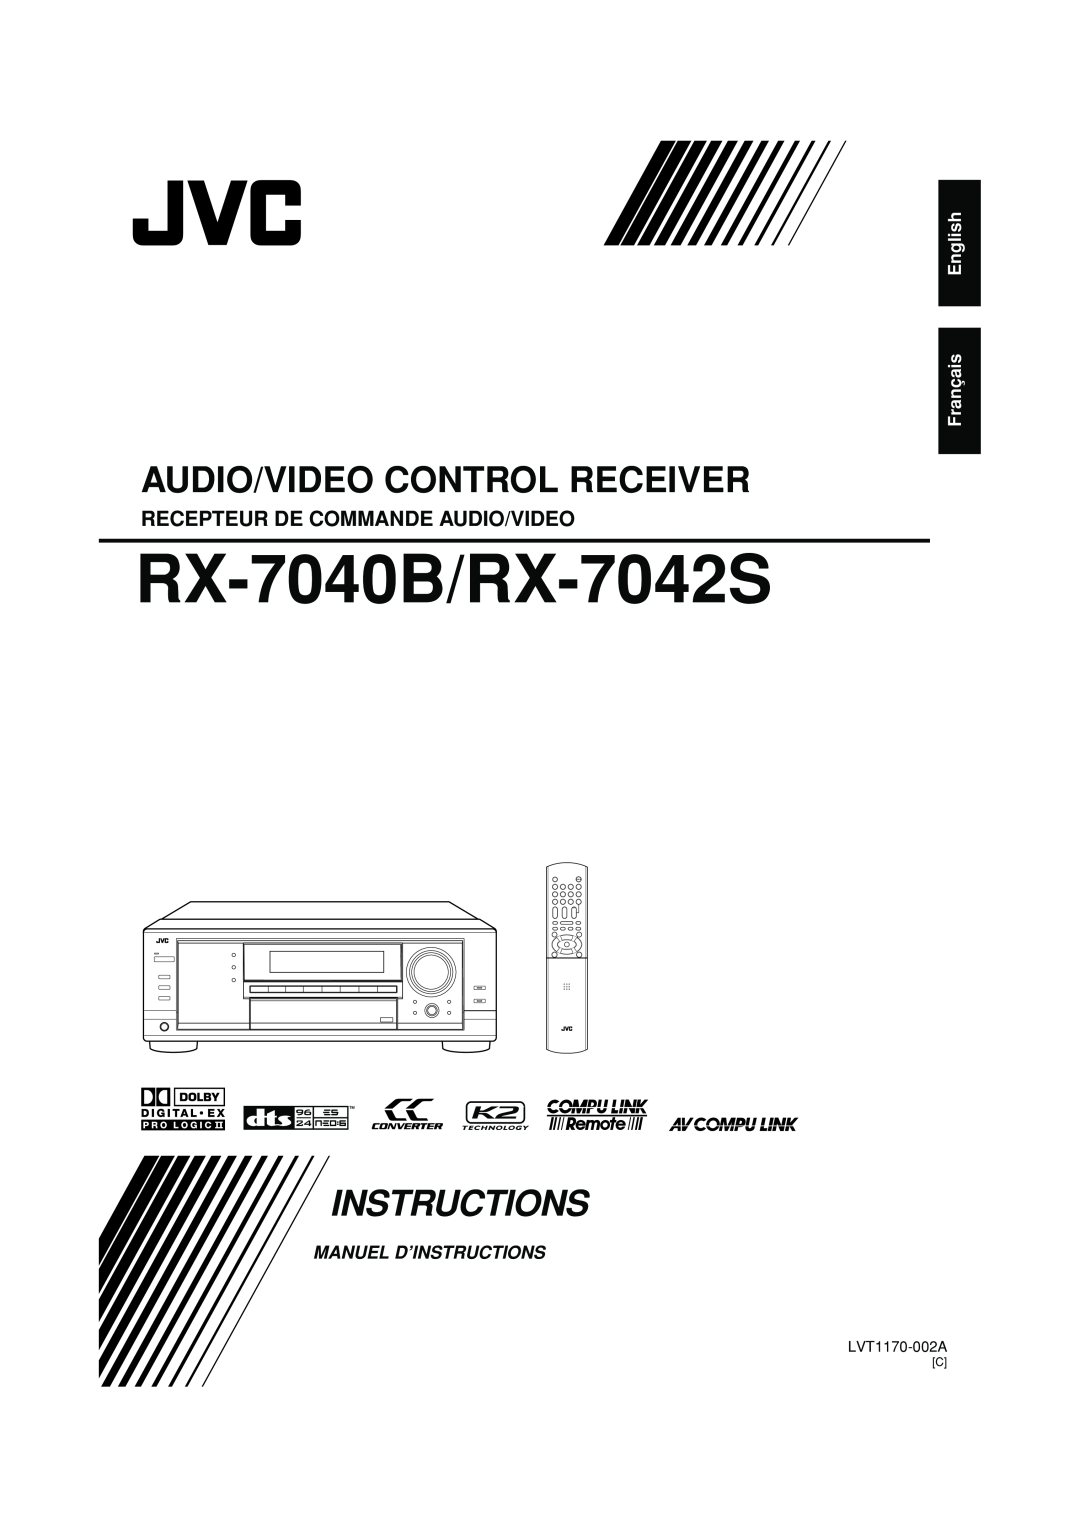 JVC Recepteur De Commande Audio/Video, English Français, RX-7040B/RX-7042S, Audio/Video Control Receiver, Instructions 